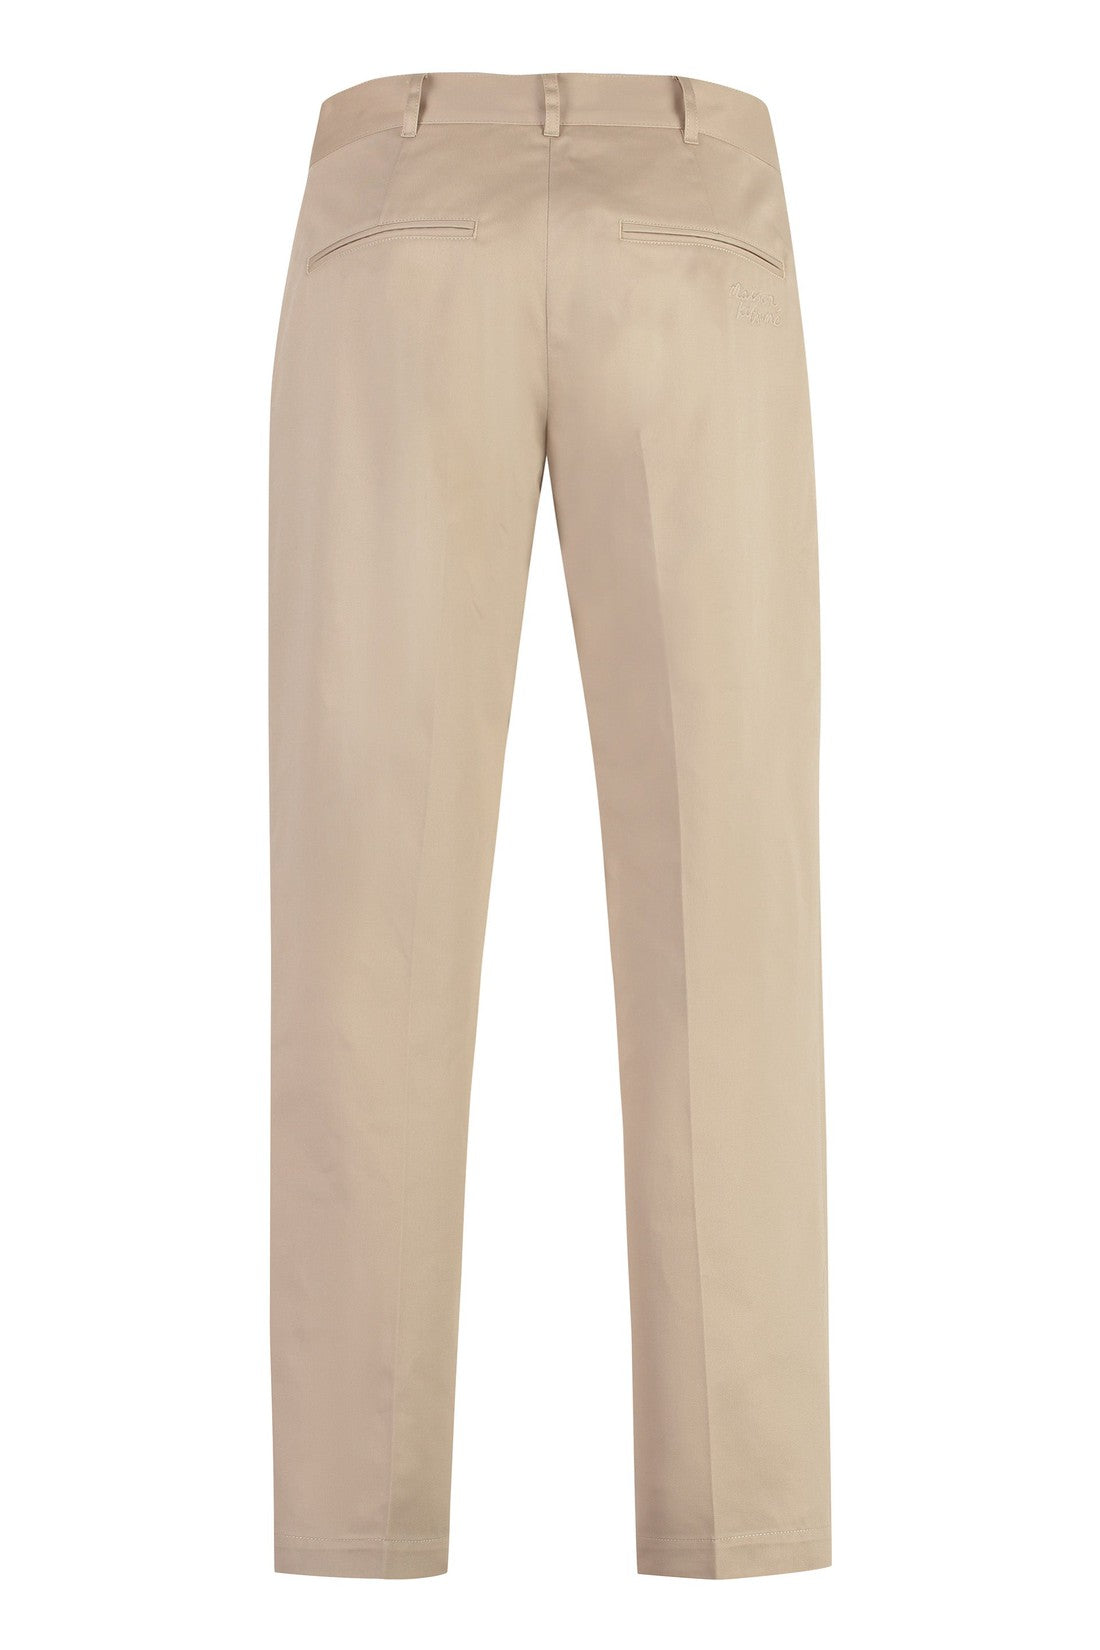 Maison Kitsuné-OUTLET-SALE-Cotton trousers-ARCHIVIST